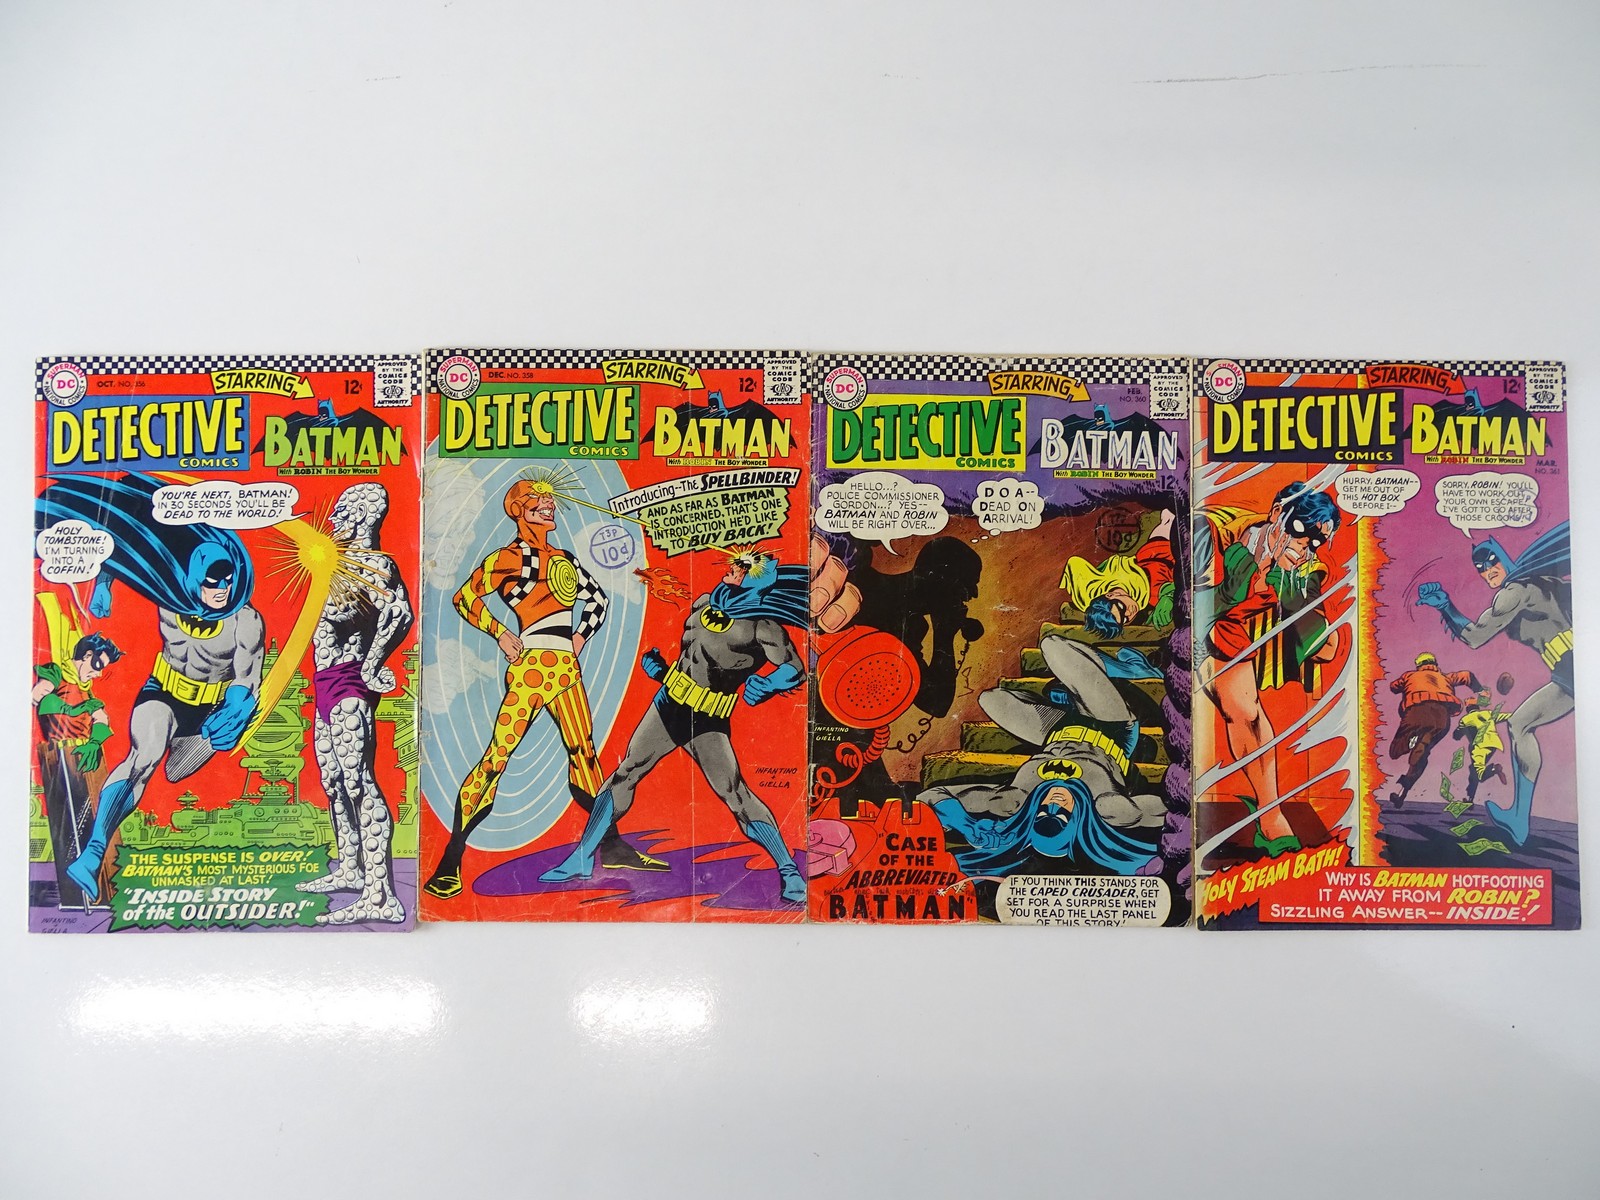 DETECTIVE COMICS: BATMAN #356, 358, 360, 361 - (4 in Lot) - (1966/67- DC - US Price & UK Cover